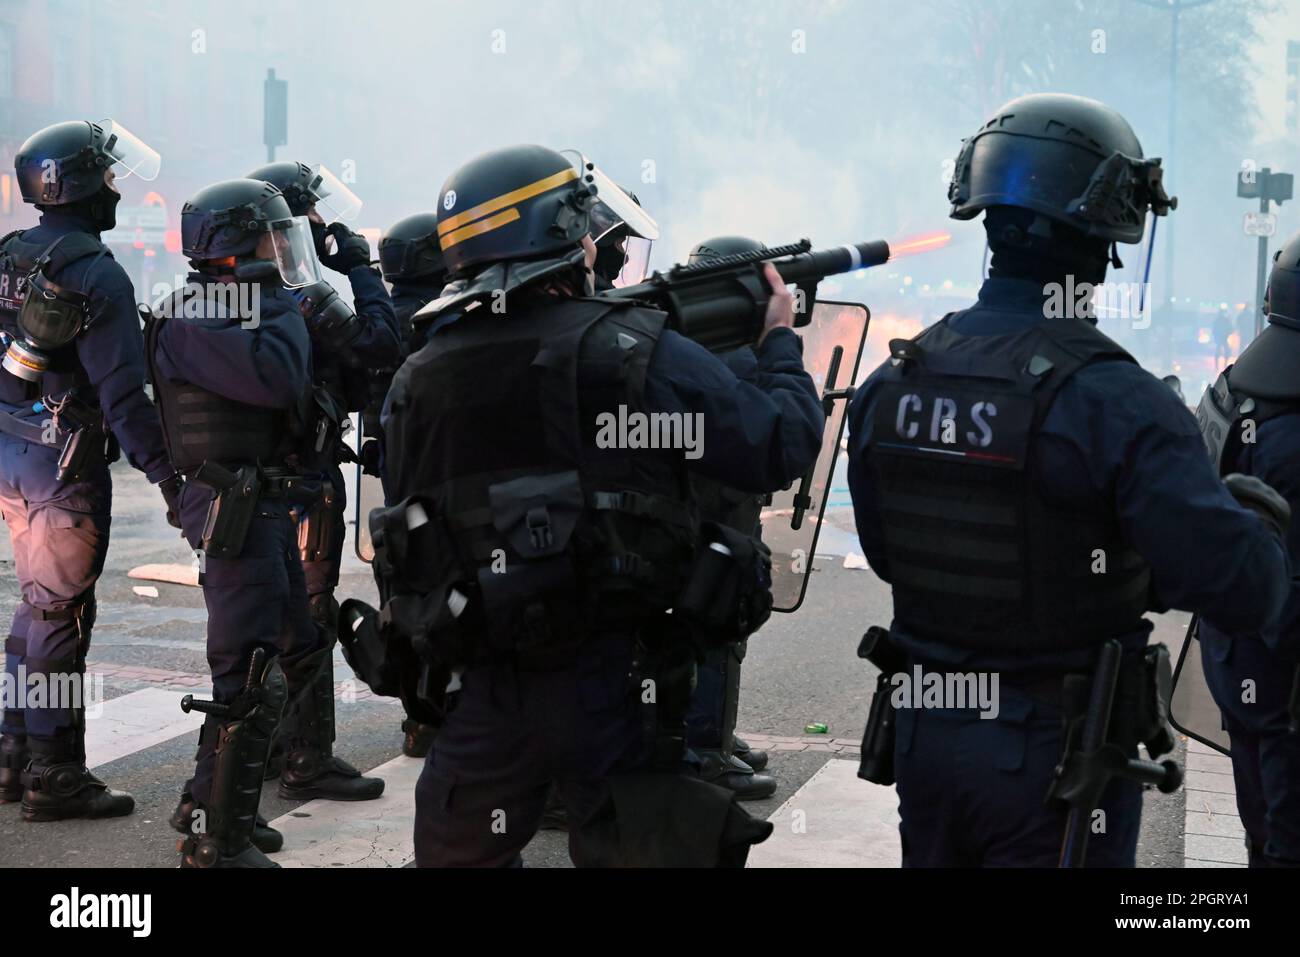 2023 03 23: Le manifestazioni contro la nuova legge di pensionamento in Francia da parte del presidente Macron si sono trasformate in violenti scontri con le unità di polizia antisommossa di tutta la Francia. Foto Stock